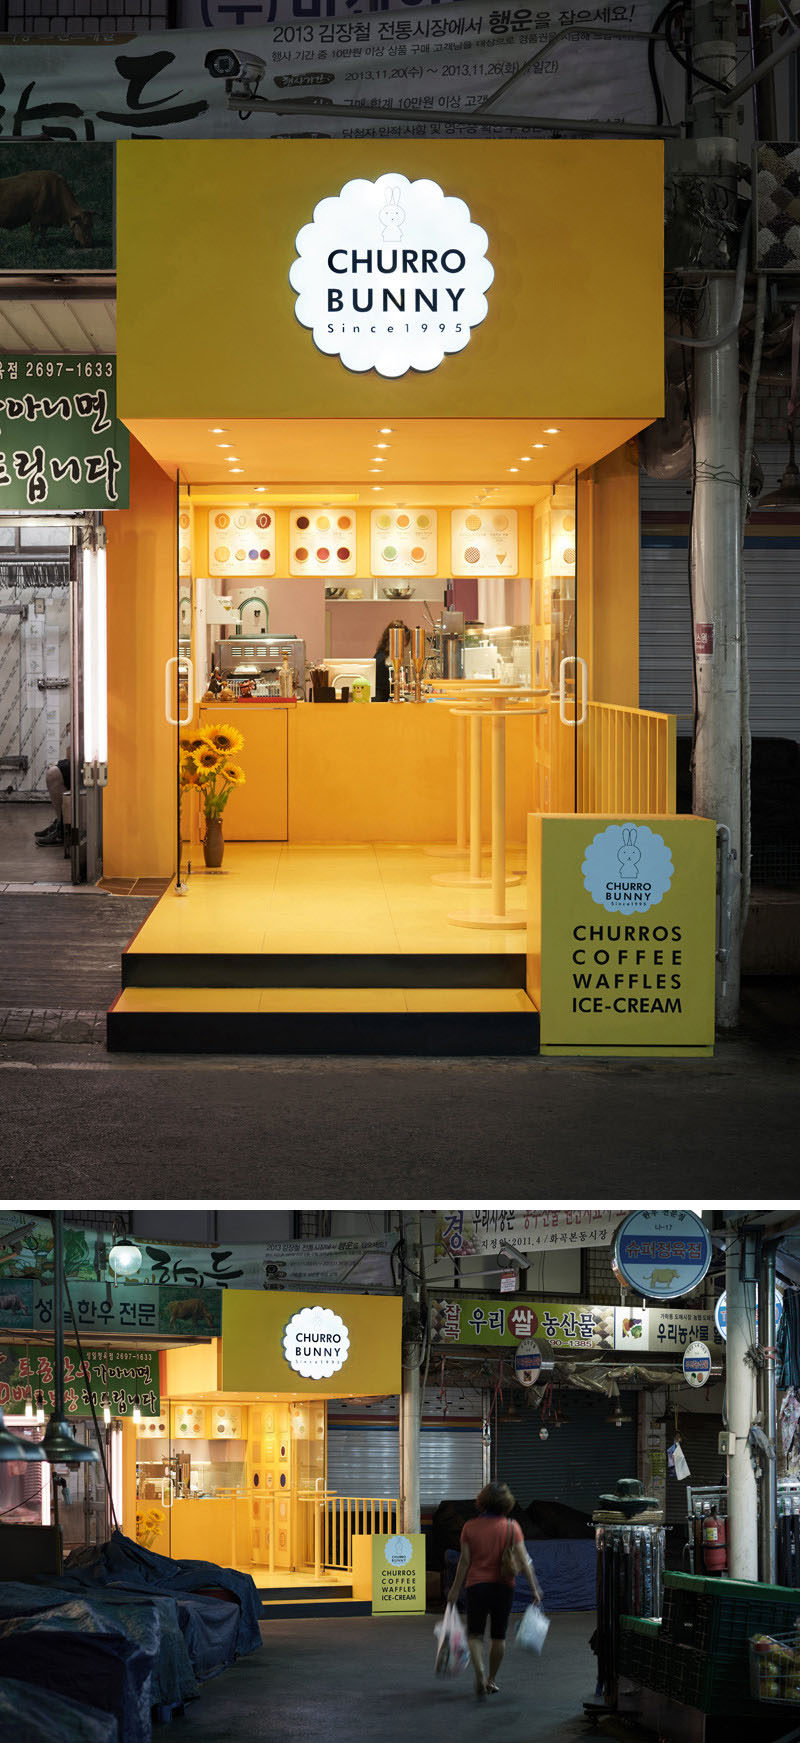 10 уникальных кофеен в Азии / Дизайн-студия M4 спроектировала Churro Bunny, яркое и привлекательное кафе с едой на вынос в Сеуле, Южная Корея, которое выделяется среди остальных зданий на улице и добавляет причудливый оттенок желтого цвета кварталу.